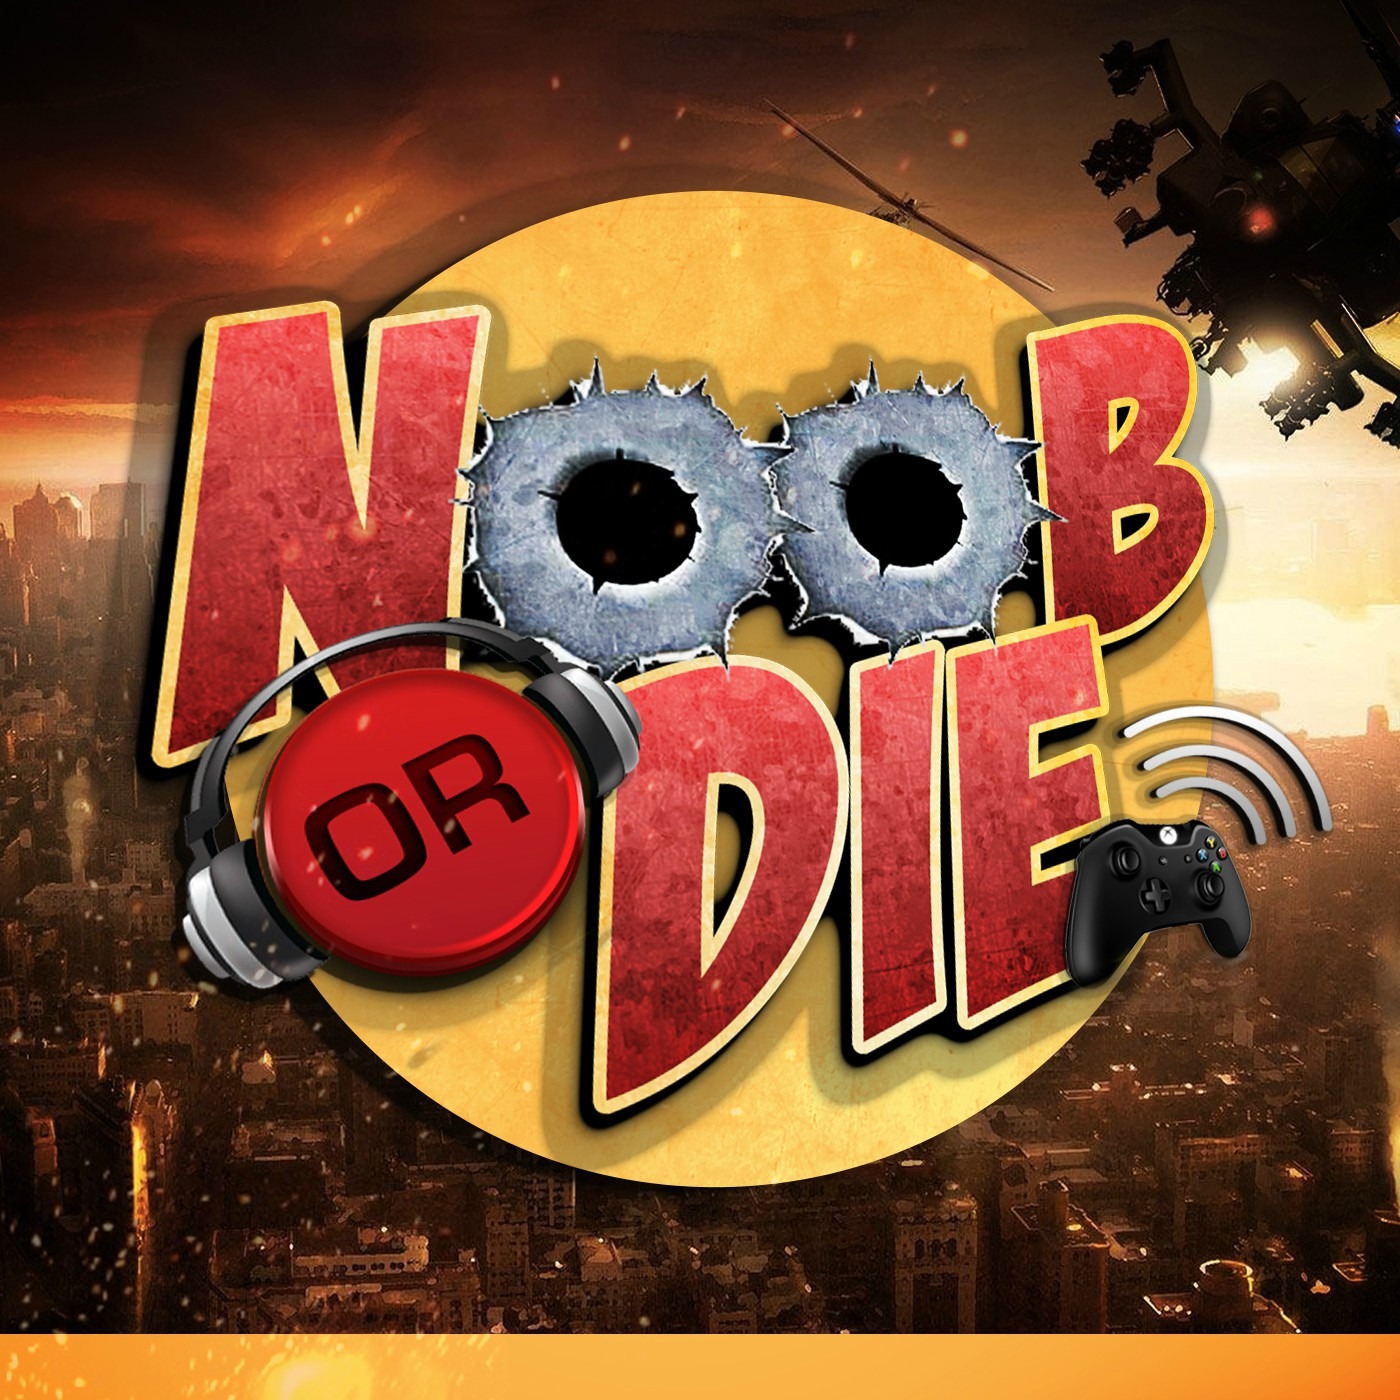 Noob Or Die